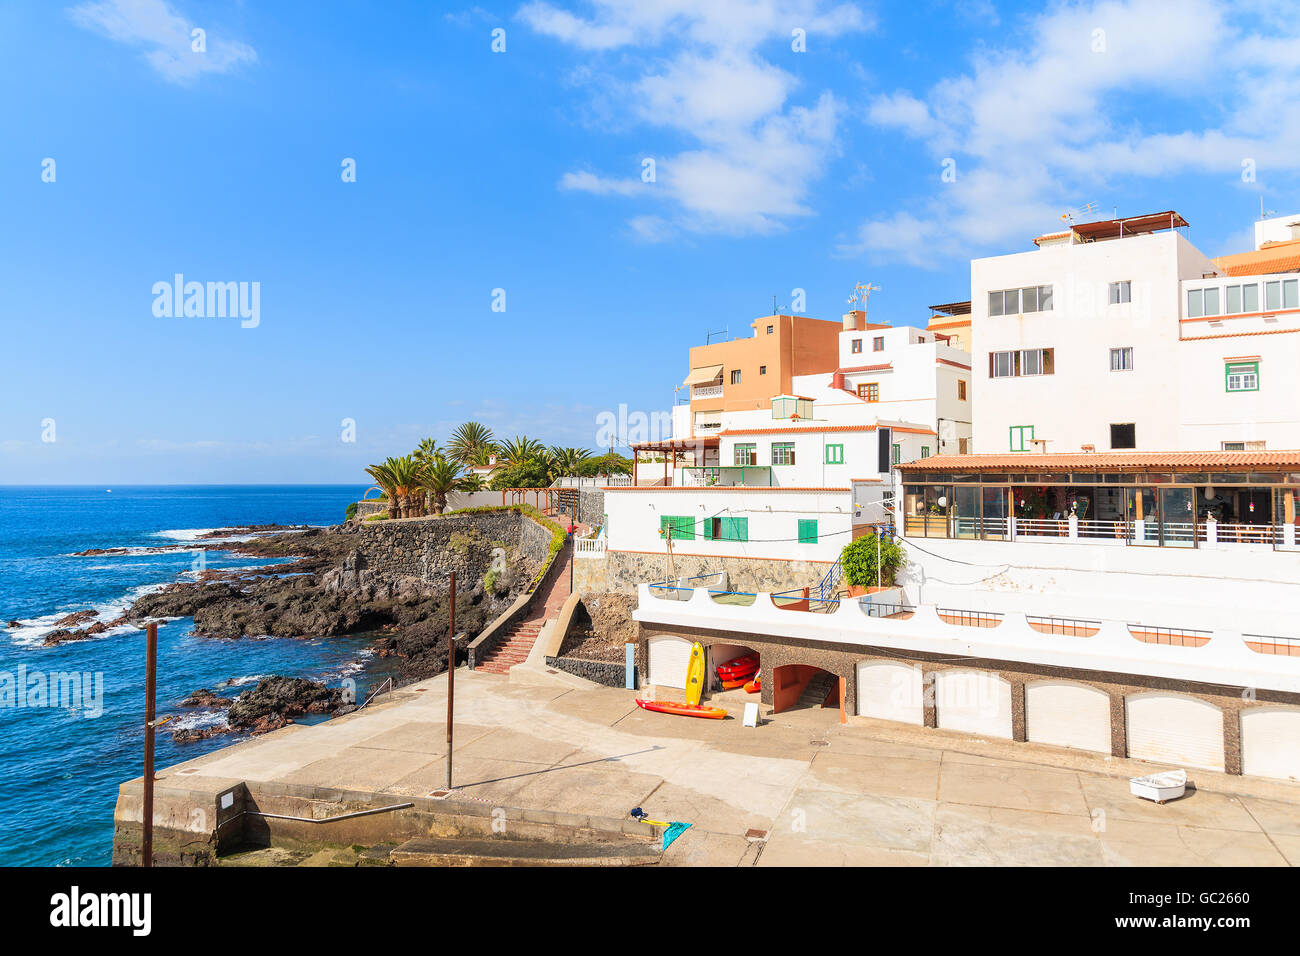 Vue d'Alcala ville avec architecture typique des Canaries sur la côte de Tenerife, Canaries, Espagne Banque D'Images